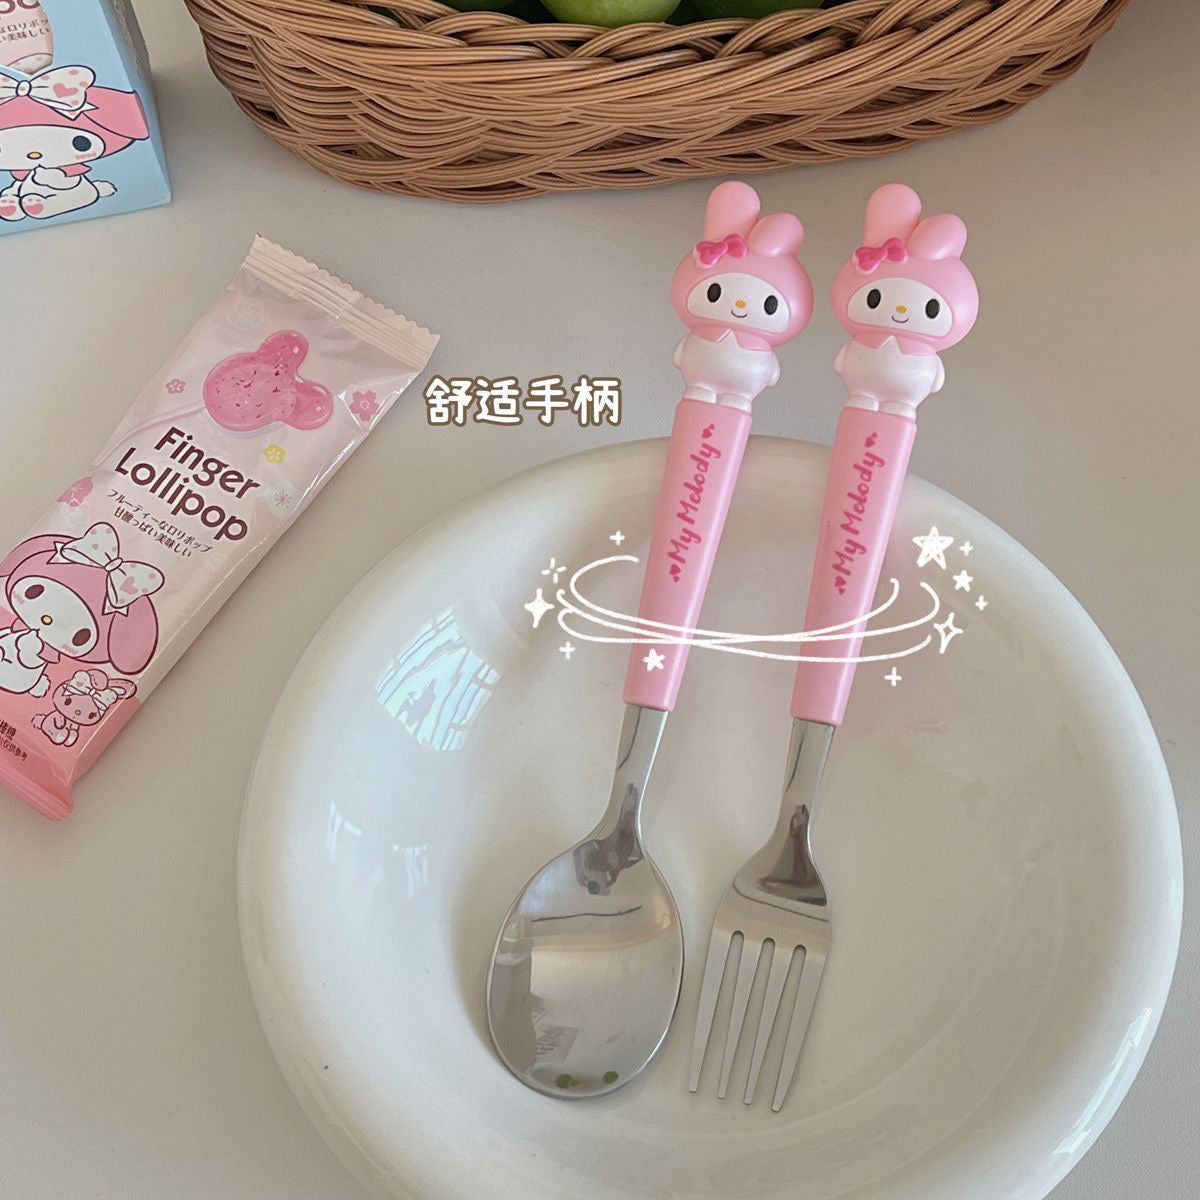 Sanrio Cutlery Set